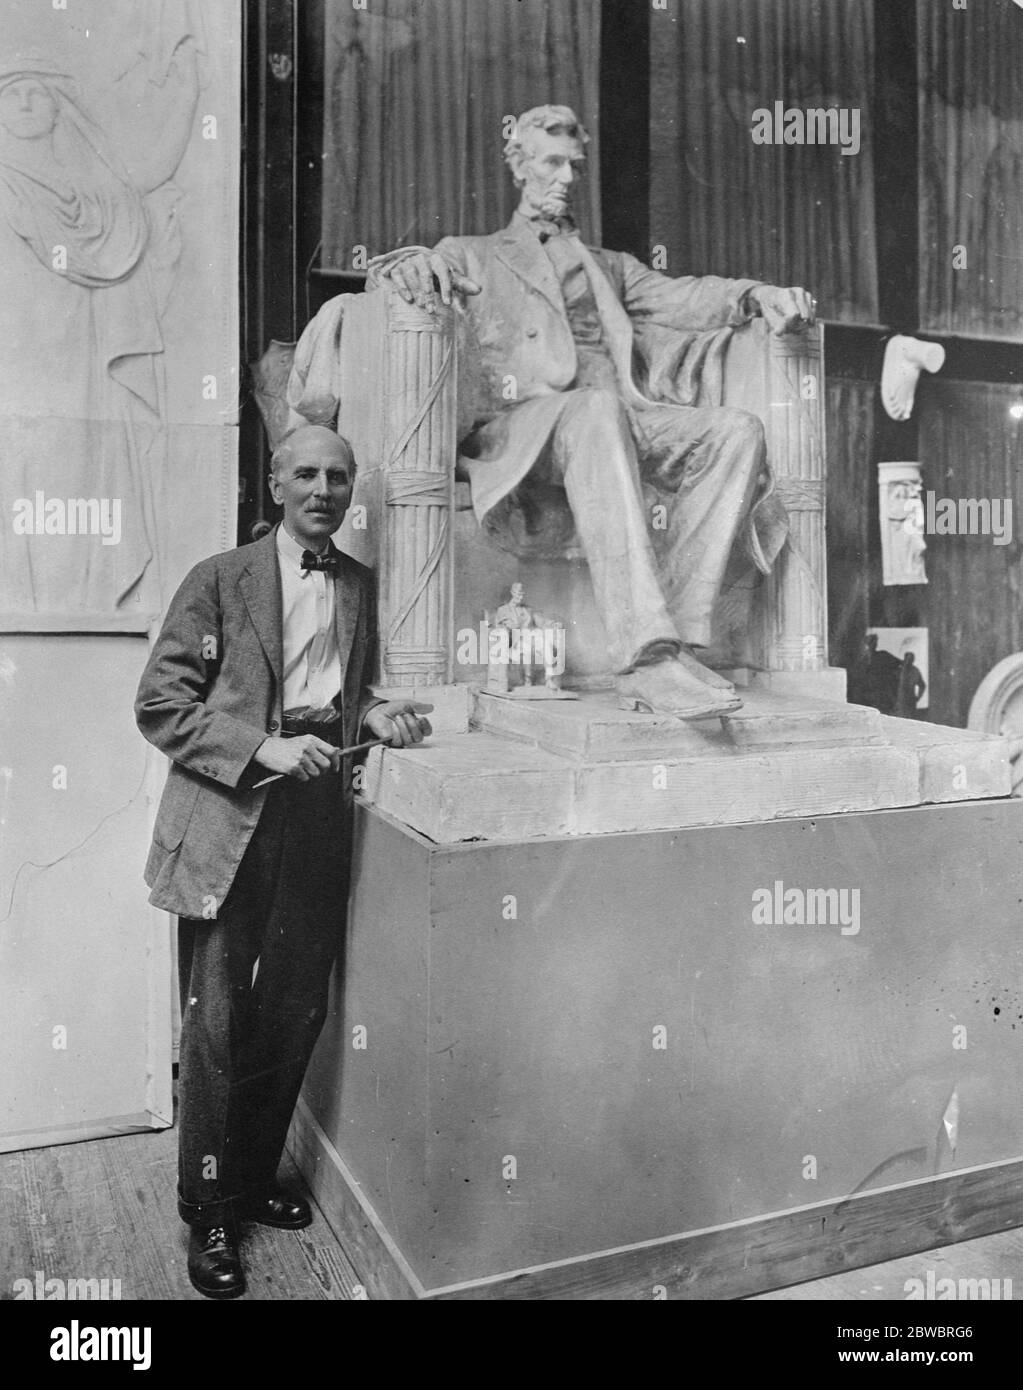 Sculpteur et sa statue la plus célèbre M. Daniel Chester , le plus grand sculpteur d'Amérique , avec un modèle de sa statue la plus célèbre , le mémorial Lincoln à Washington , D C . Les modèles sont exposés à l'exposition d'art Stockbridge ( Mass ) qui a ouvert ses portes le samedi 29 août 1925 Banque D'Images